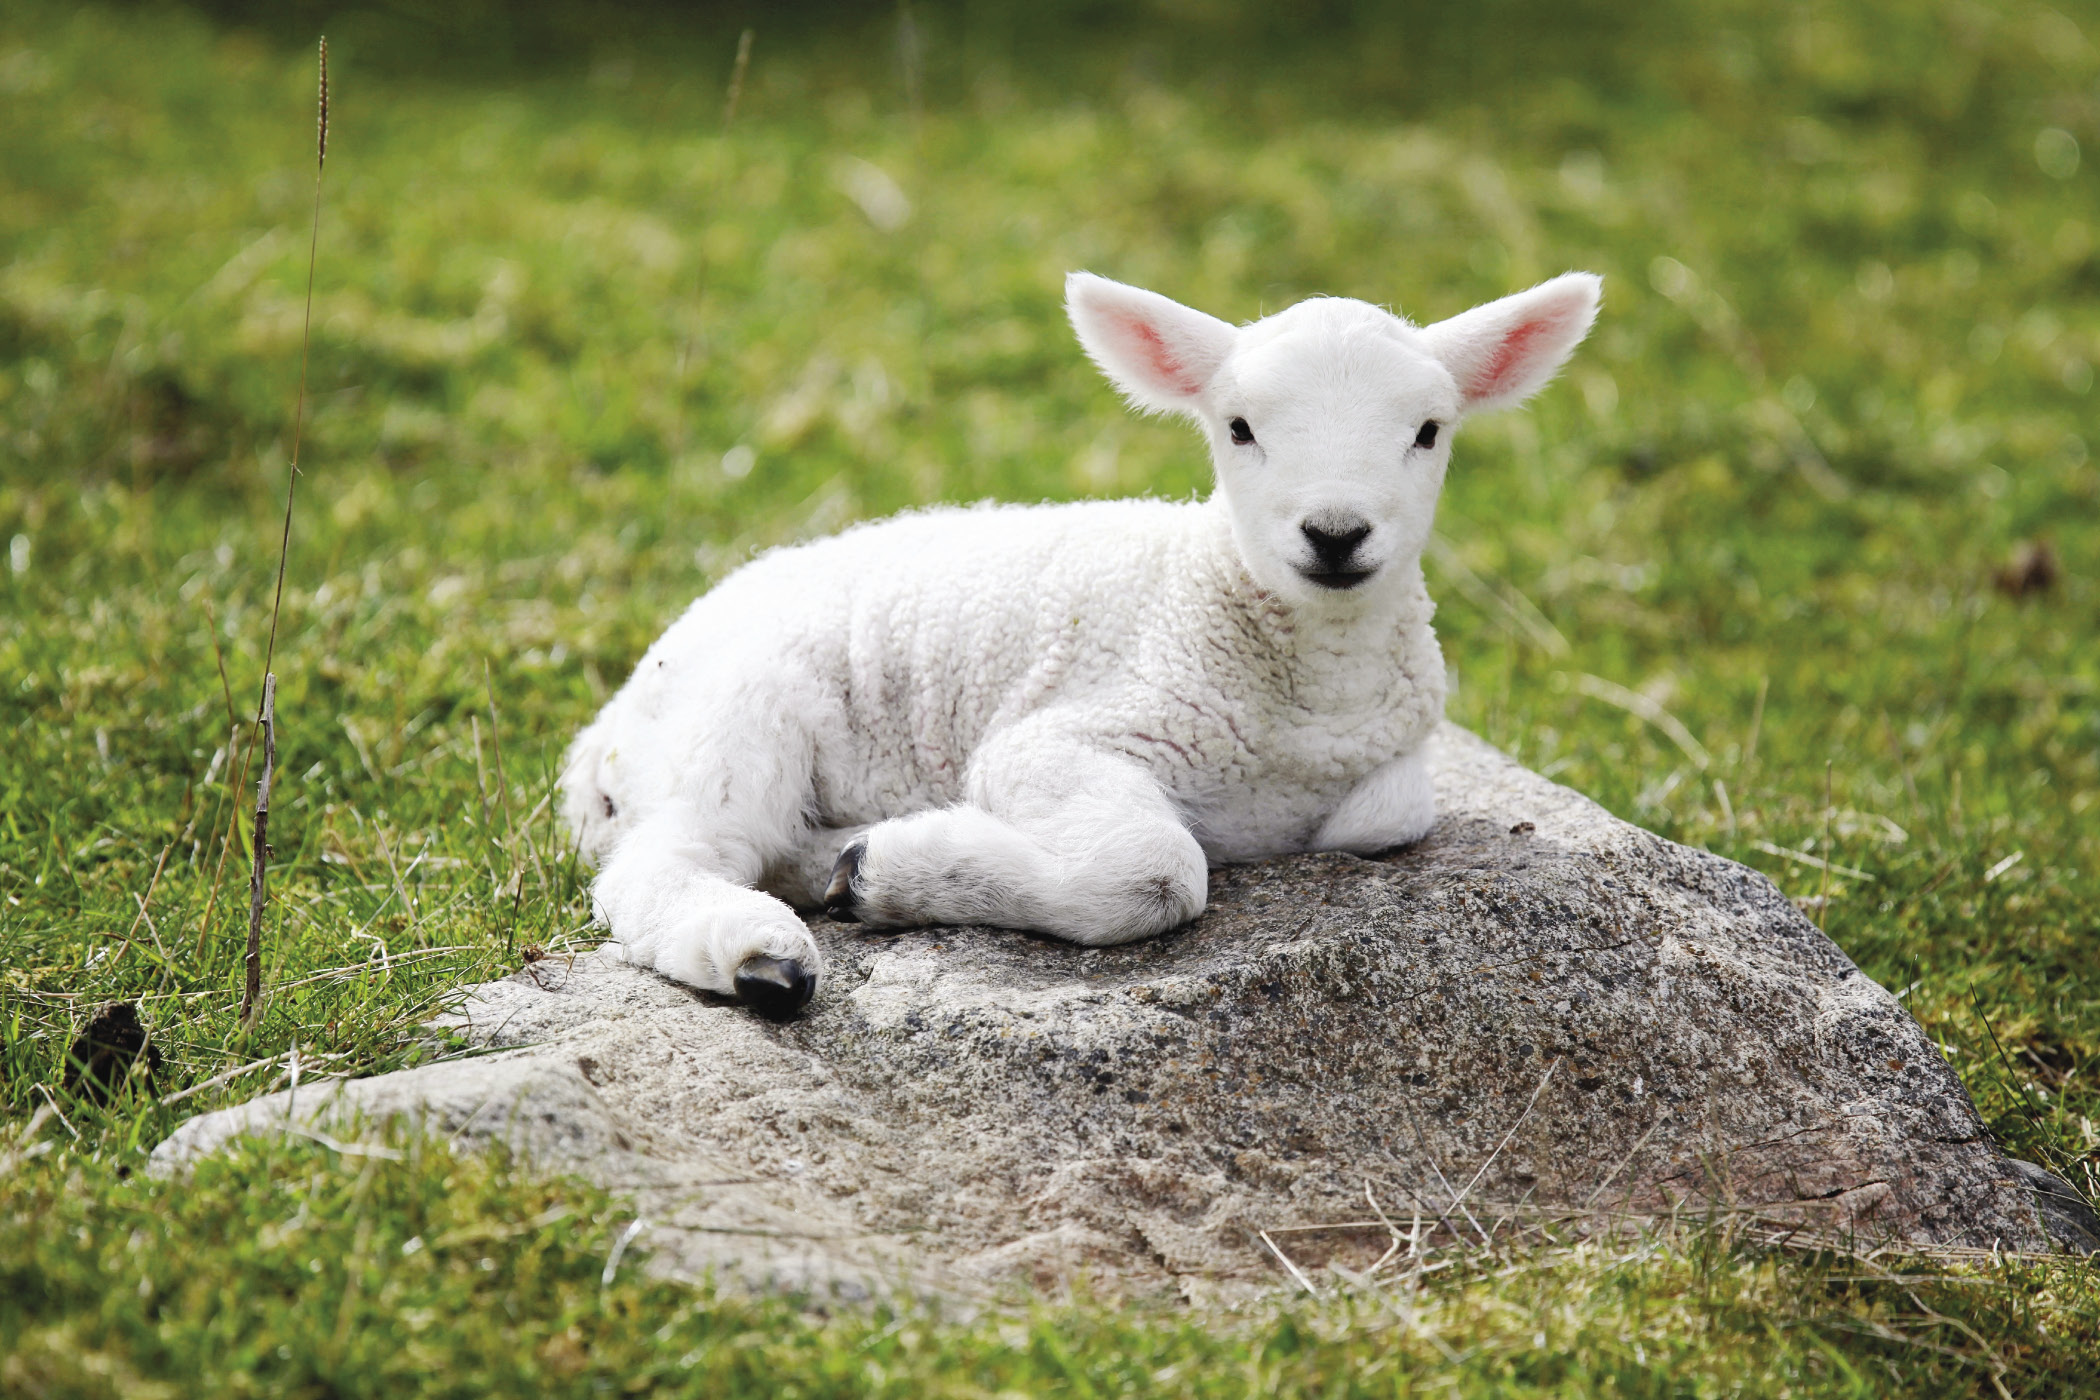 cult of the lamb sales